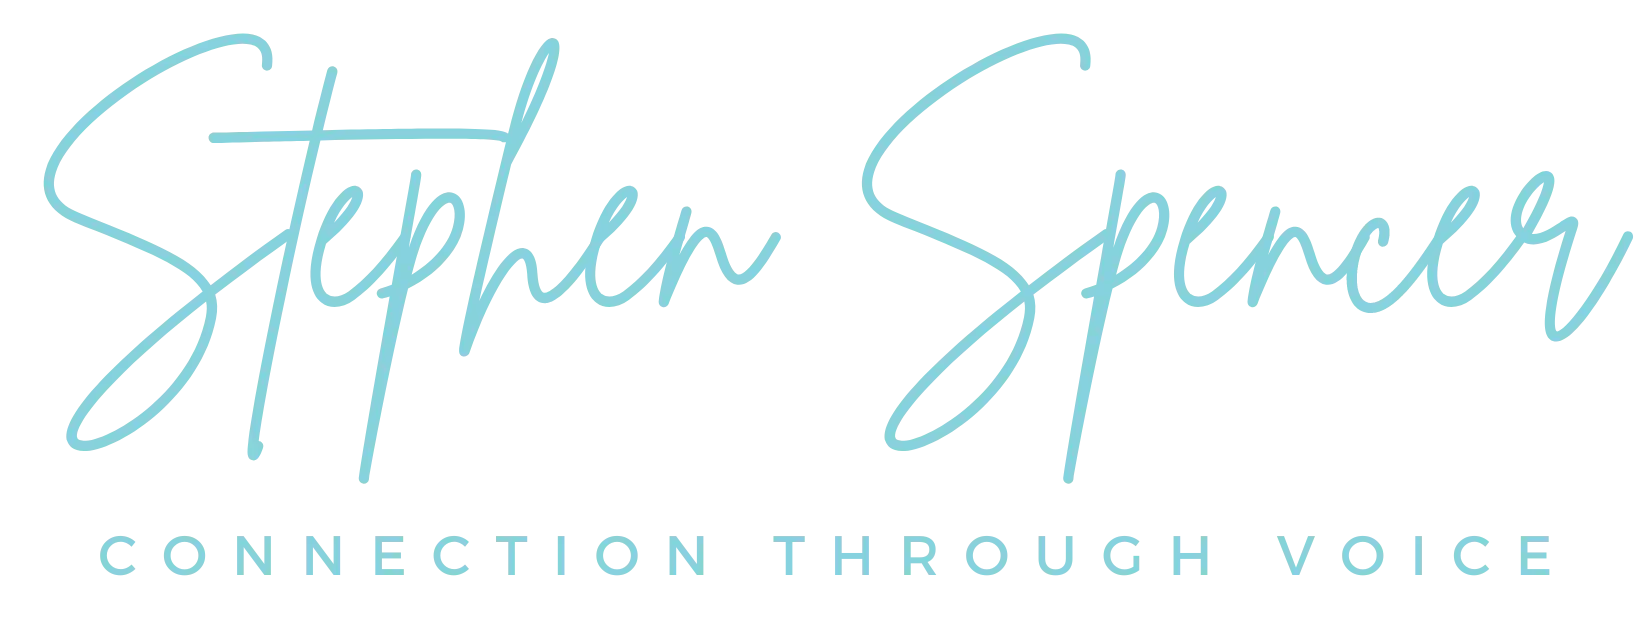 stephen spencer logo 87d2dd